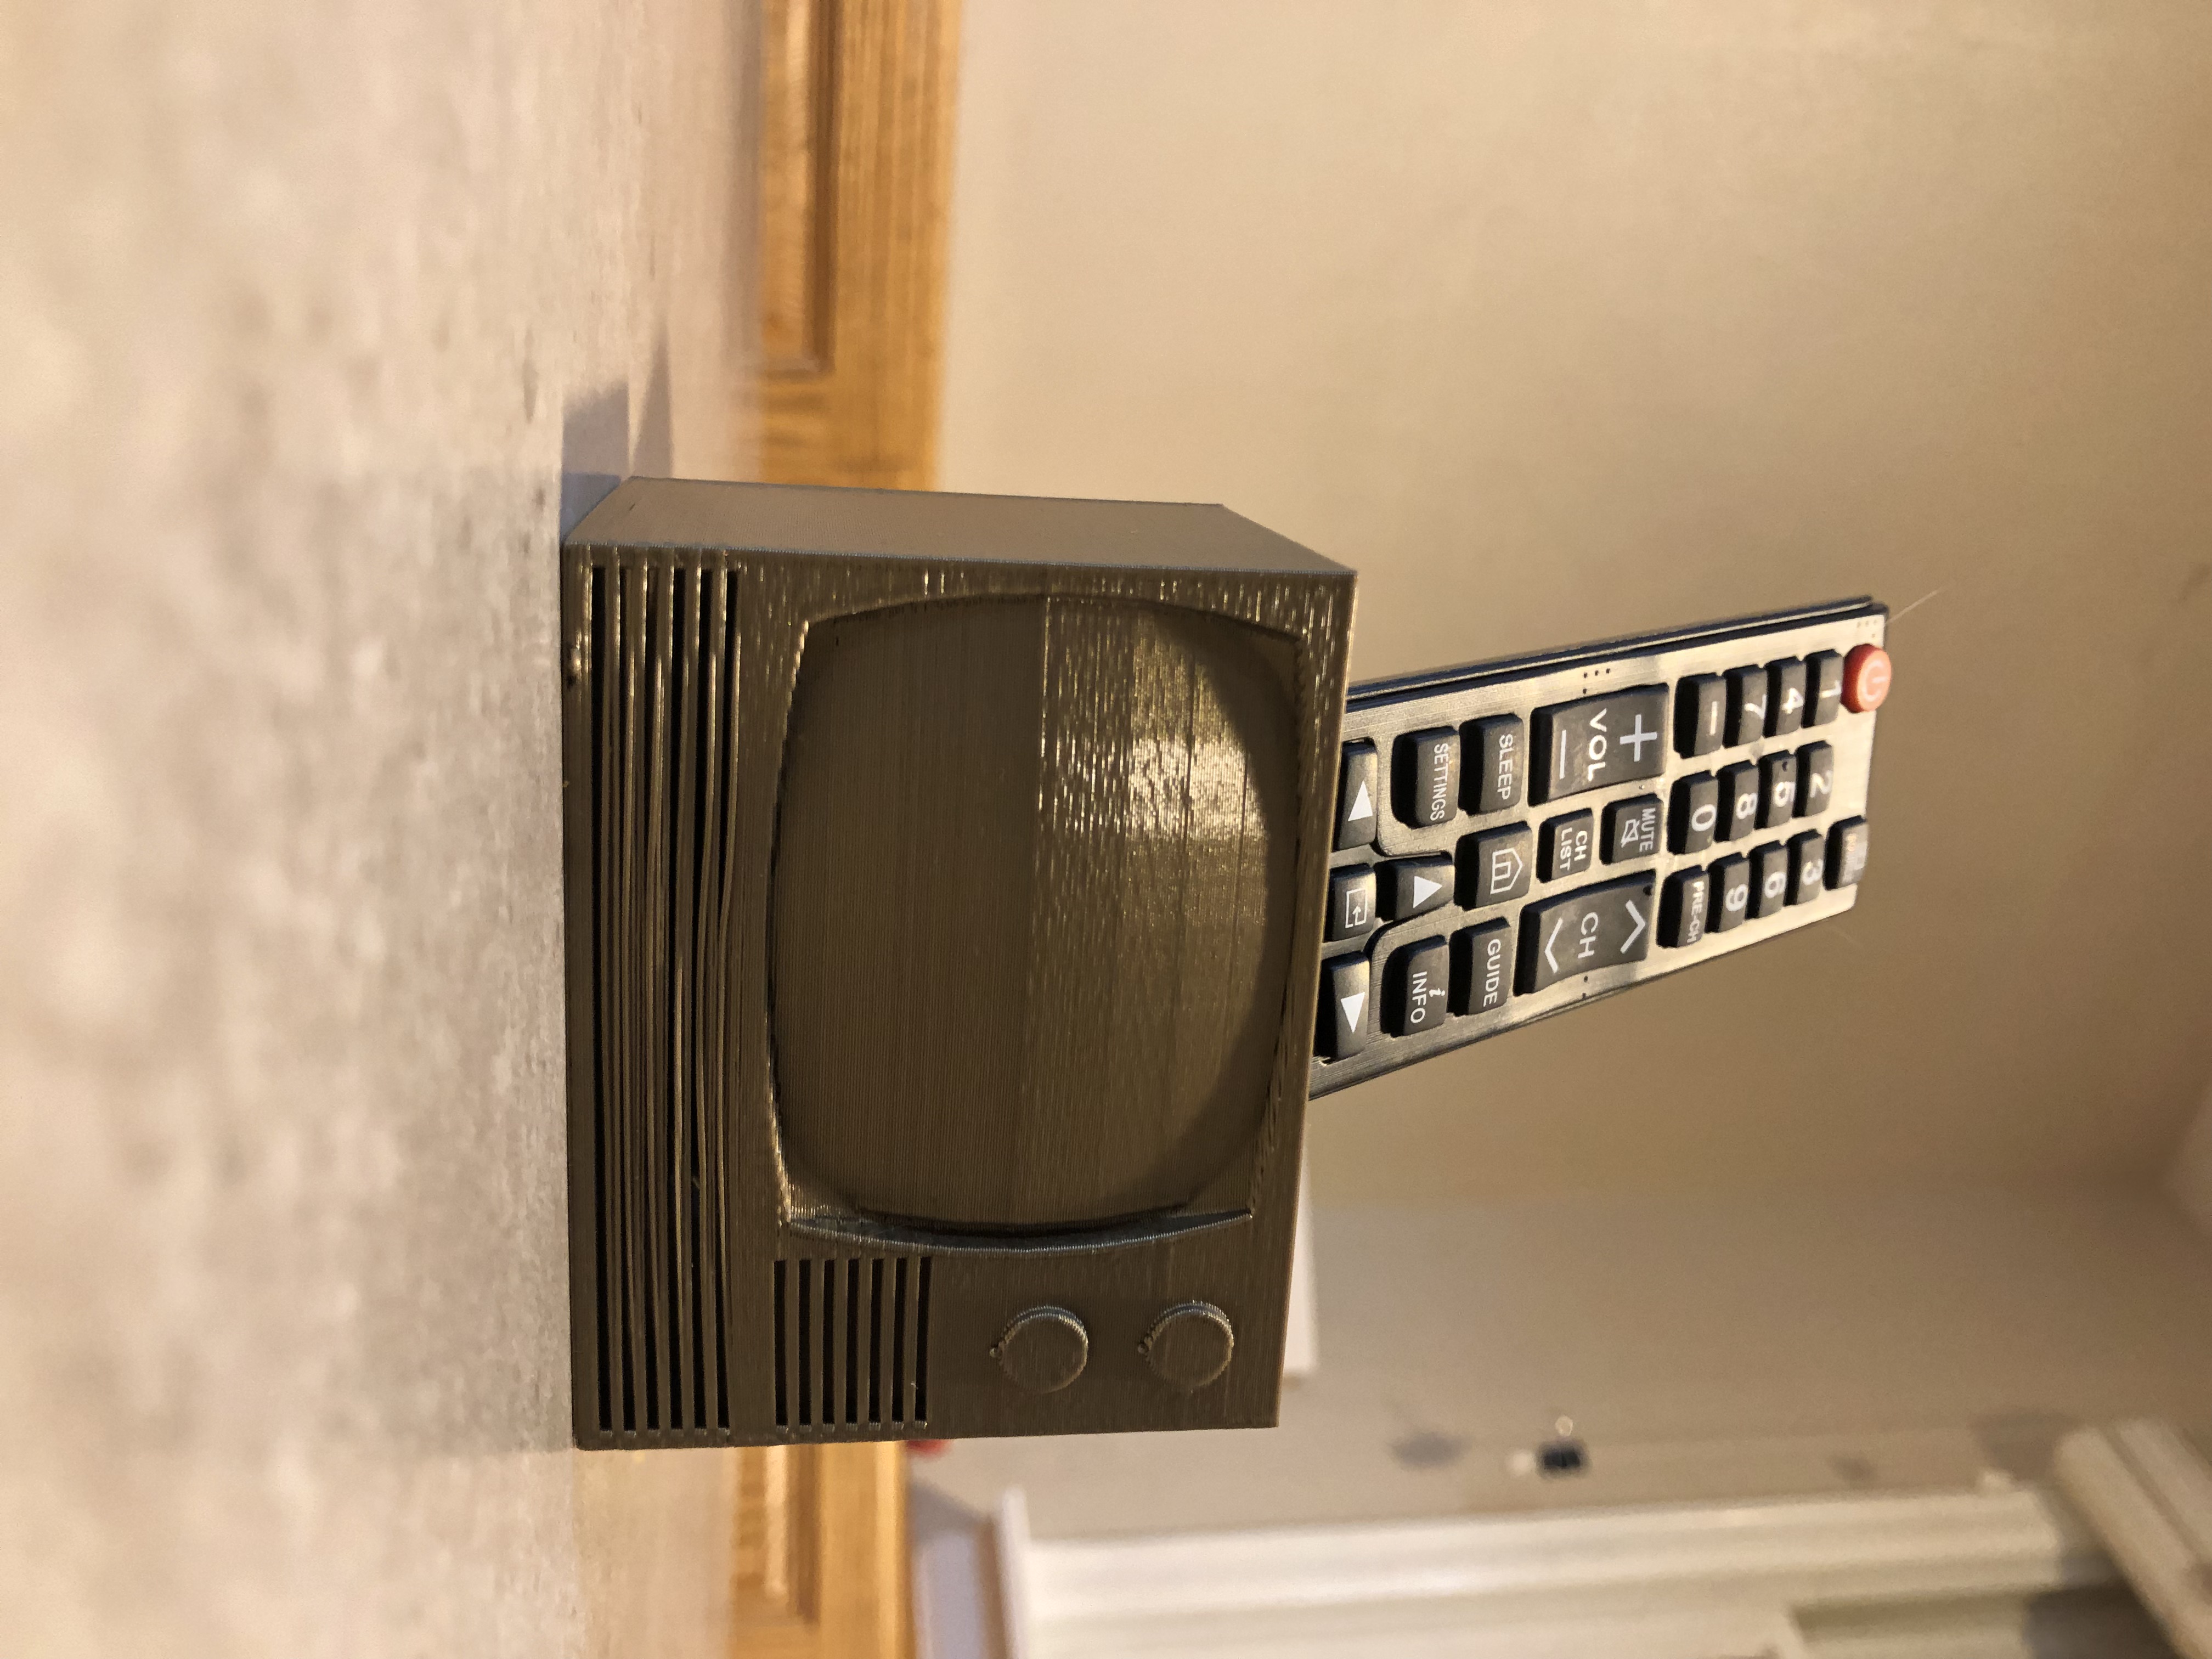 TV (remote holder)